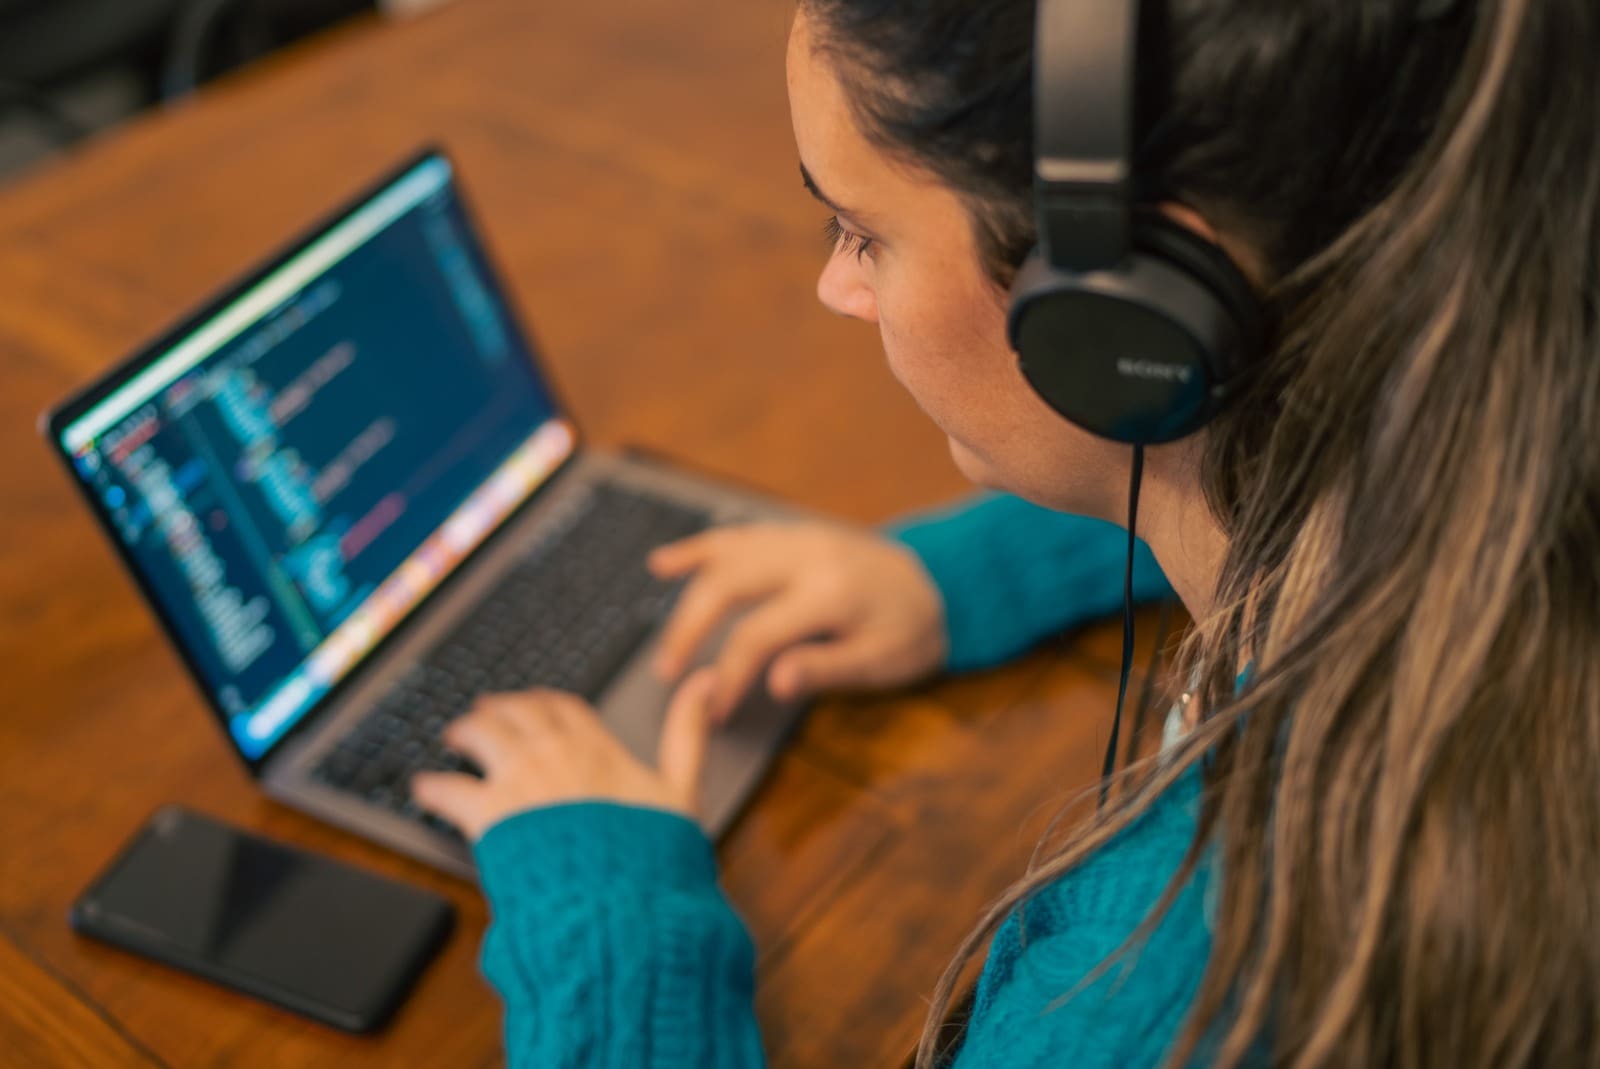 Club Chicas Programadoras: la iniciativa gratuita del Municipio para fomentar la participación femenina en tecnología